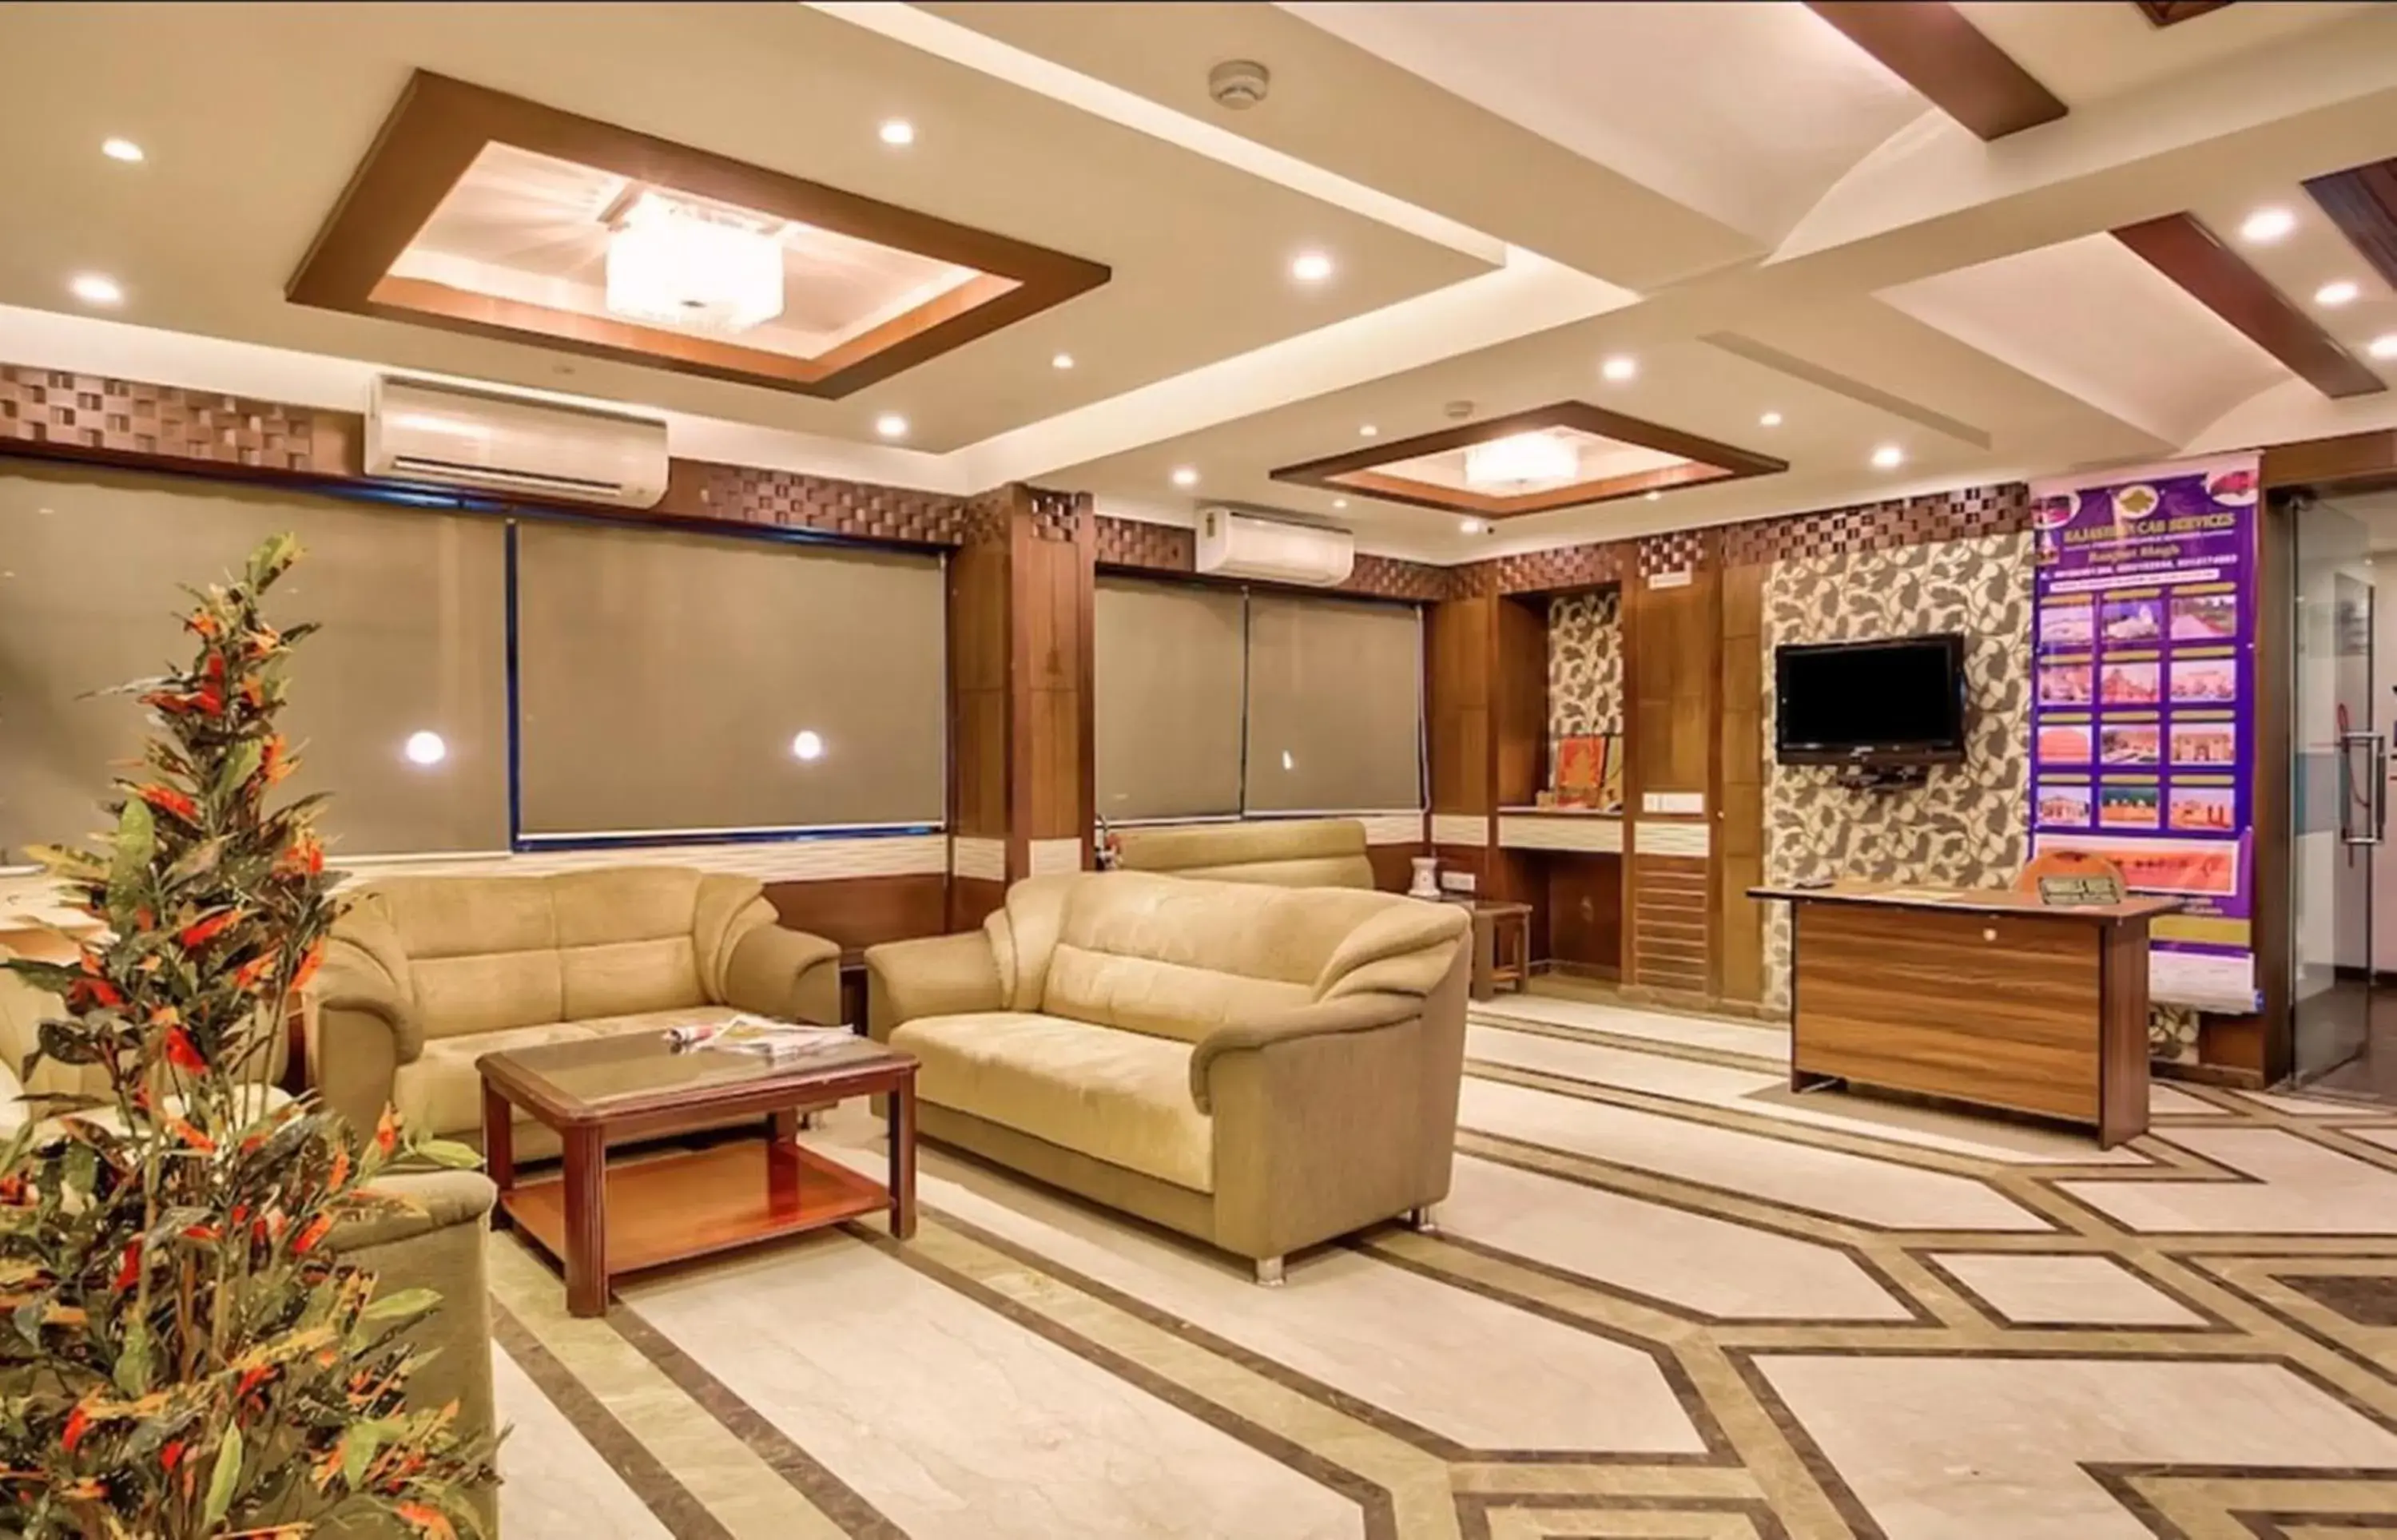 Lobby or reception in Hotel Clarks Inn Jaipur, Banipark